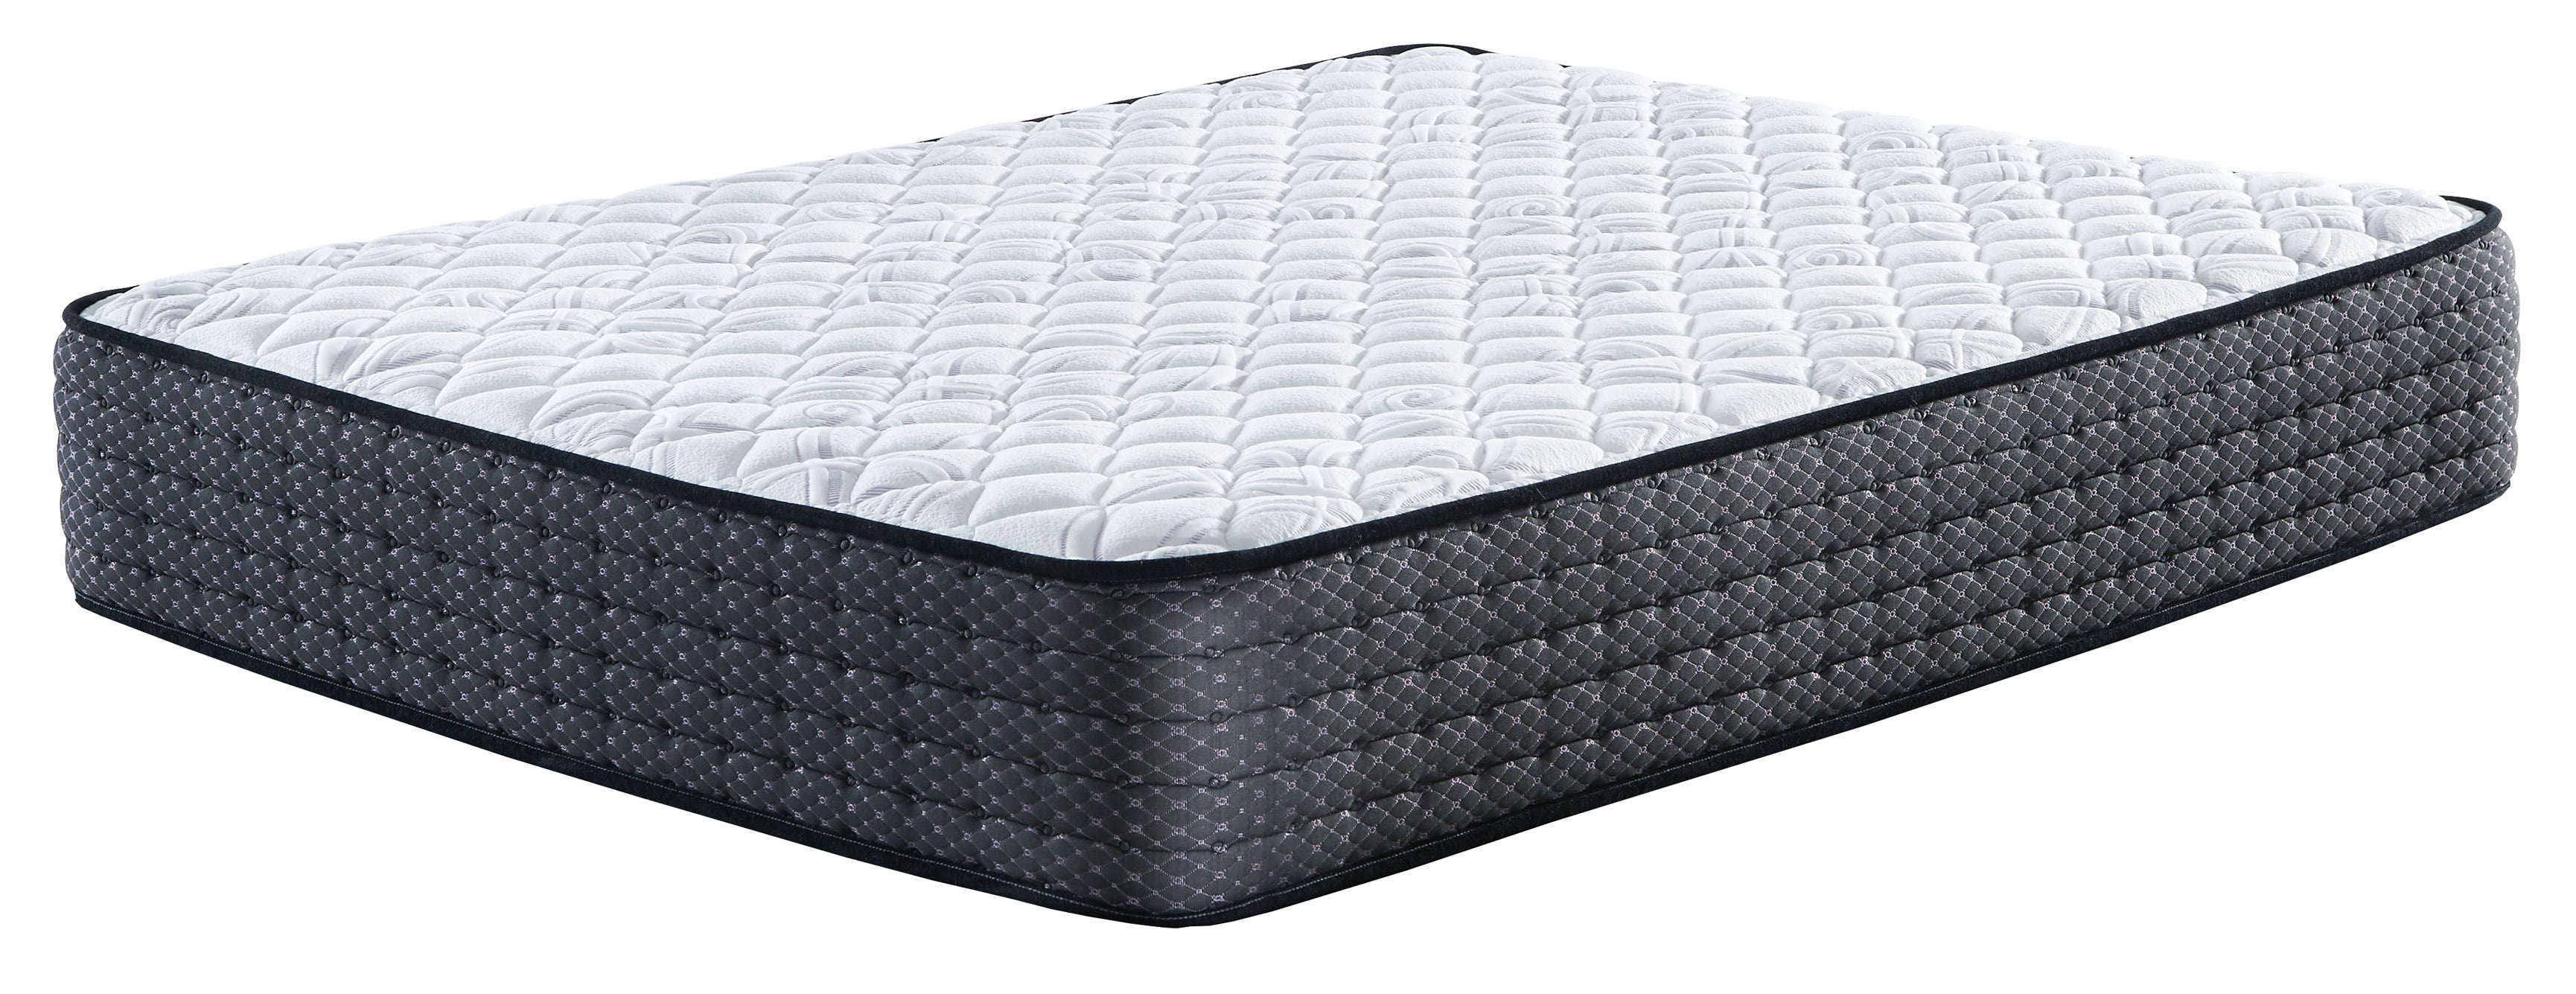 sierra sleep limited edition firm queen mattress